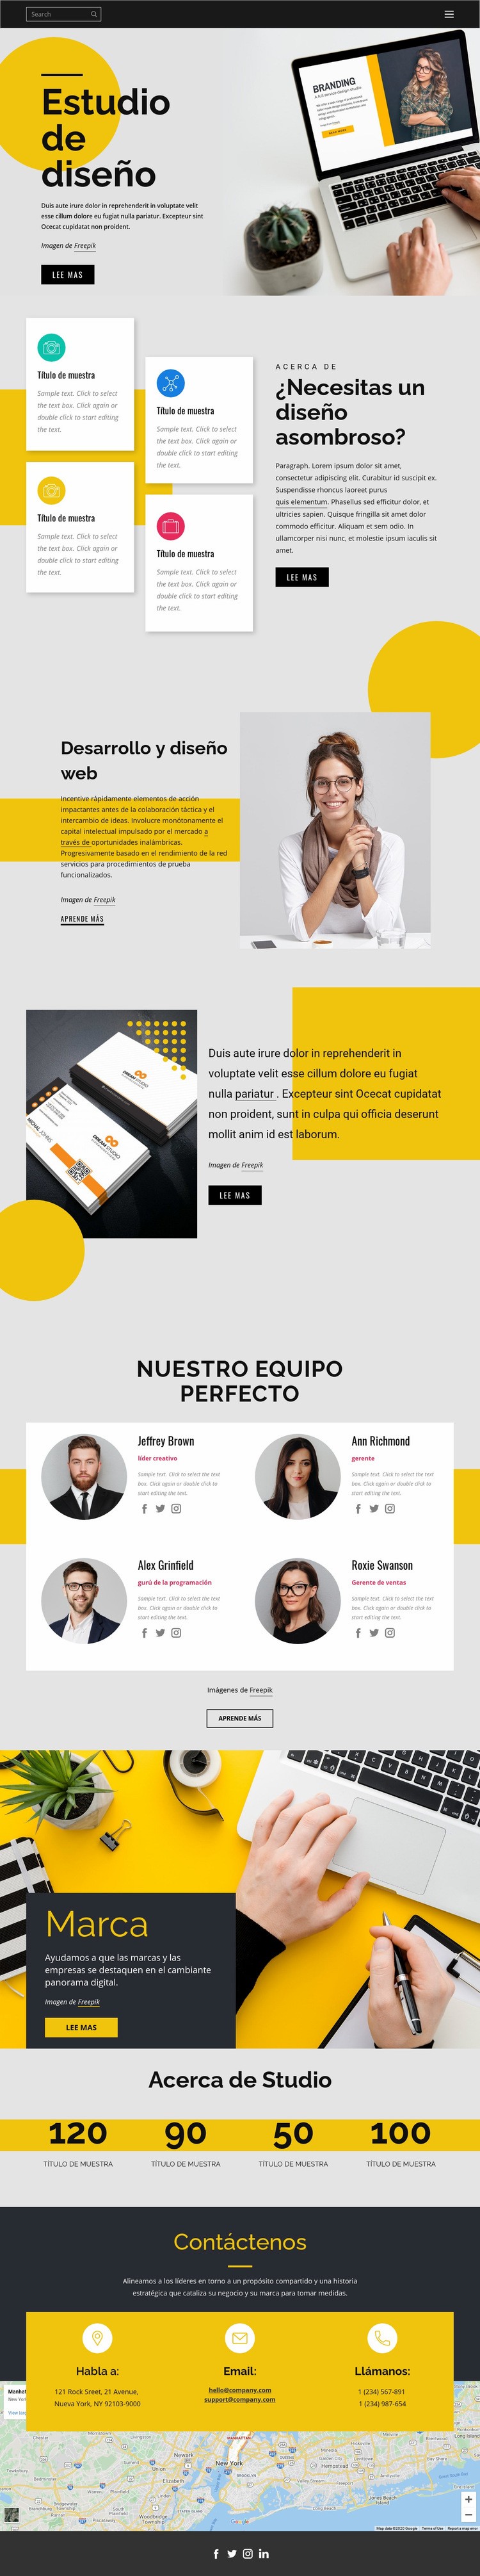 Diseño de marca, impresión y web Maqueta de sitio web